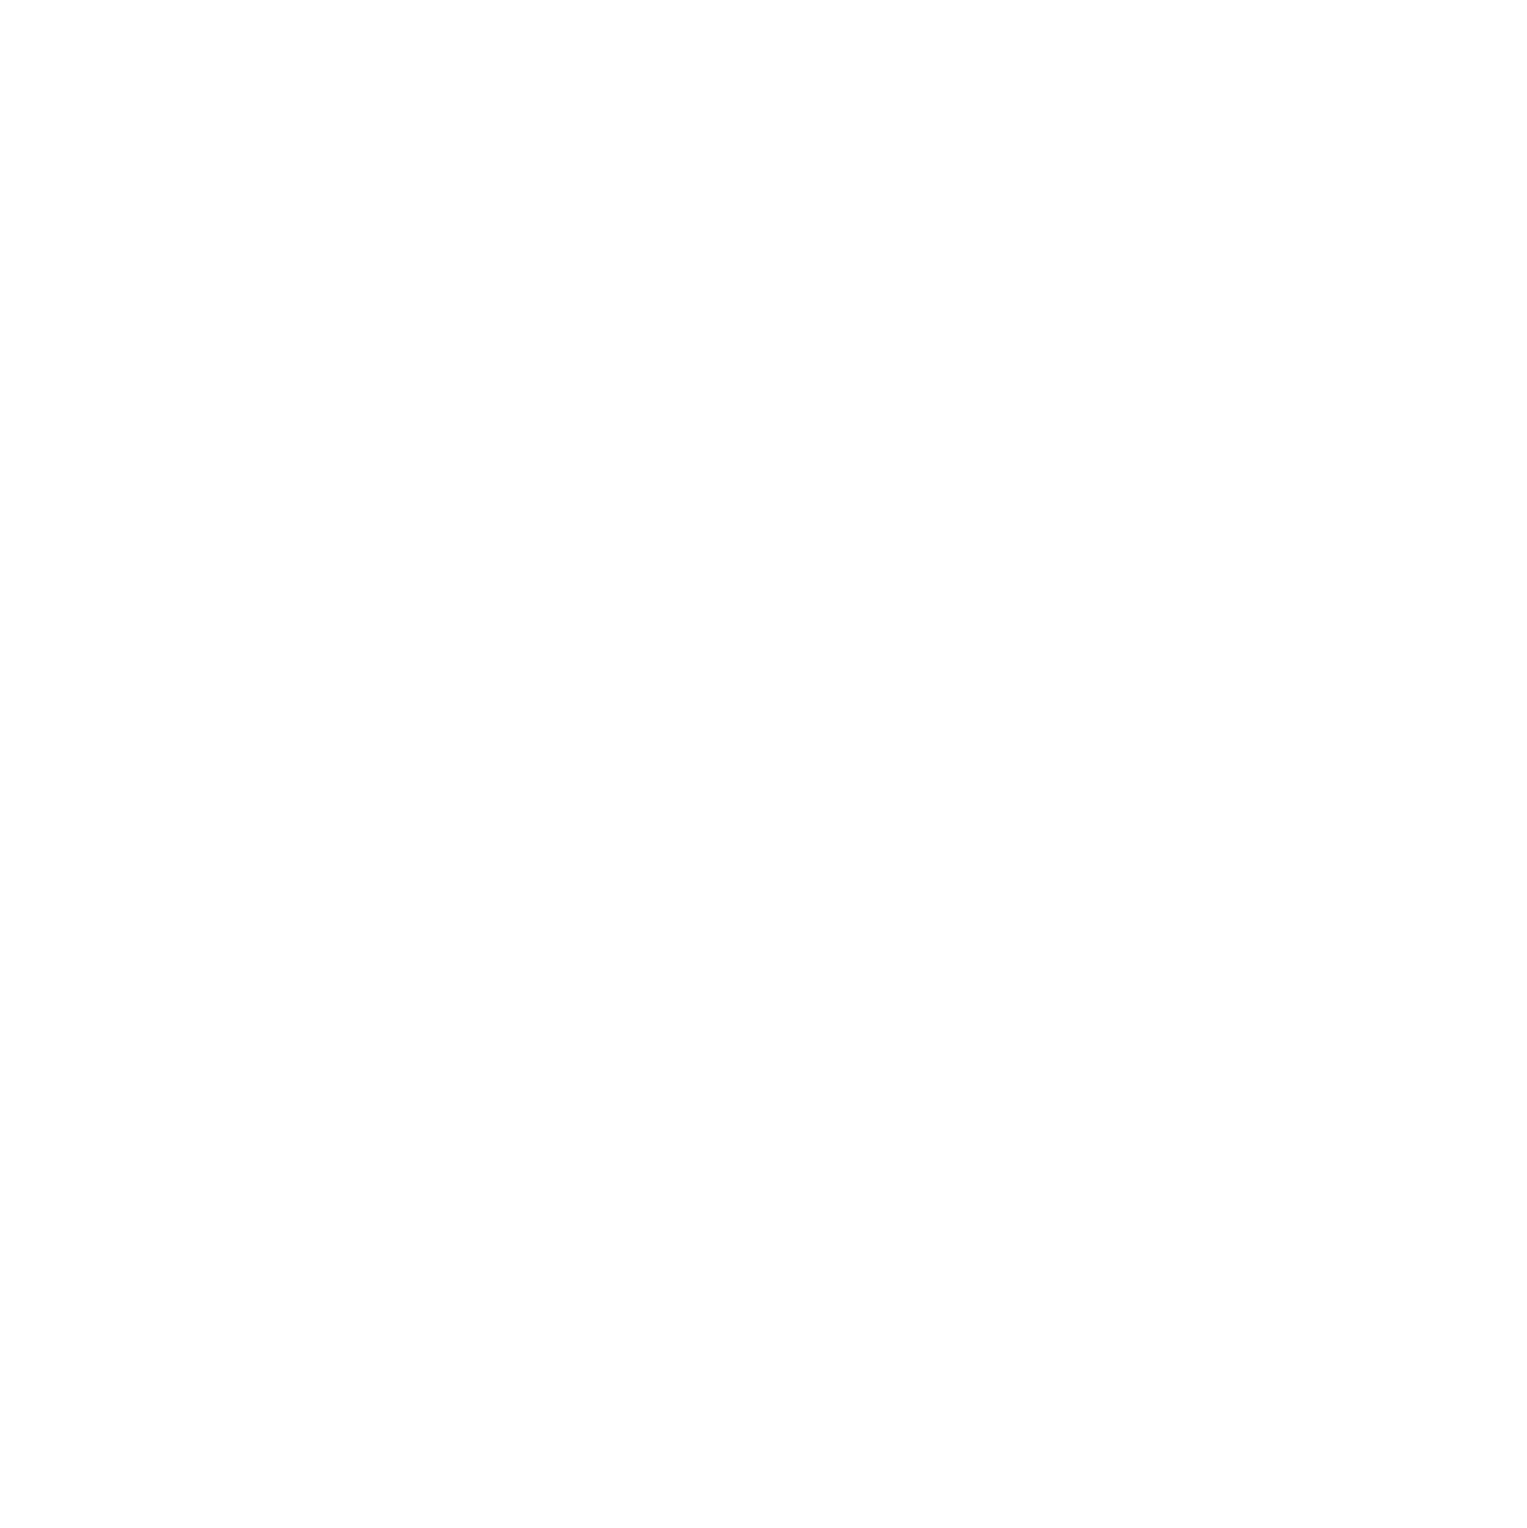 2791